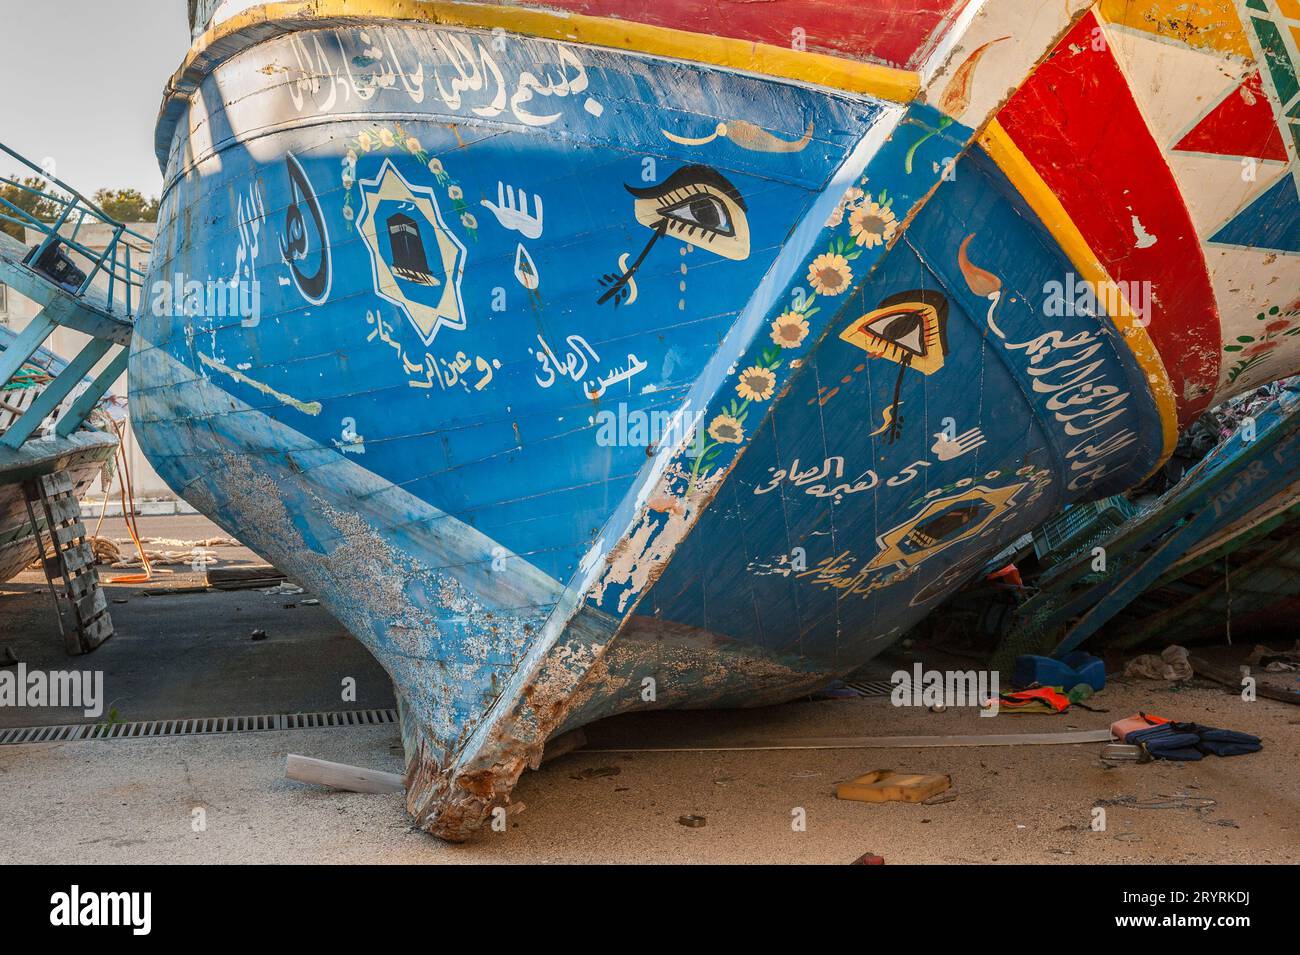 Alte Fischerboote, die von Flüchtlingen und Migranten genutzt wurden, um das Mittelmeer von Nordafrika nach Europa zu überqueren, von italienischen Grenzbeamten beschlagnahmt und im Hafen von Pozzallo, Sizilien, Italien, gelagert. Die gemalten Symbole (insbesondere das Horusauge) sollen Glück bringen und das Böse abwehren. Dieses Boot hat auch ein Bild der Ka'aba (in Mekka), die heiligste Stätte im Islam, sowie eine „Hamsa“ oder „Hand der Fatima“, ein traditioneller Schutz vor dem bösen Auge. Stockfoto